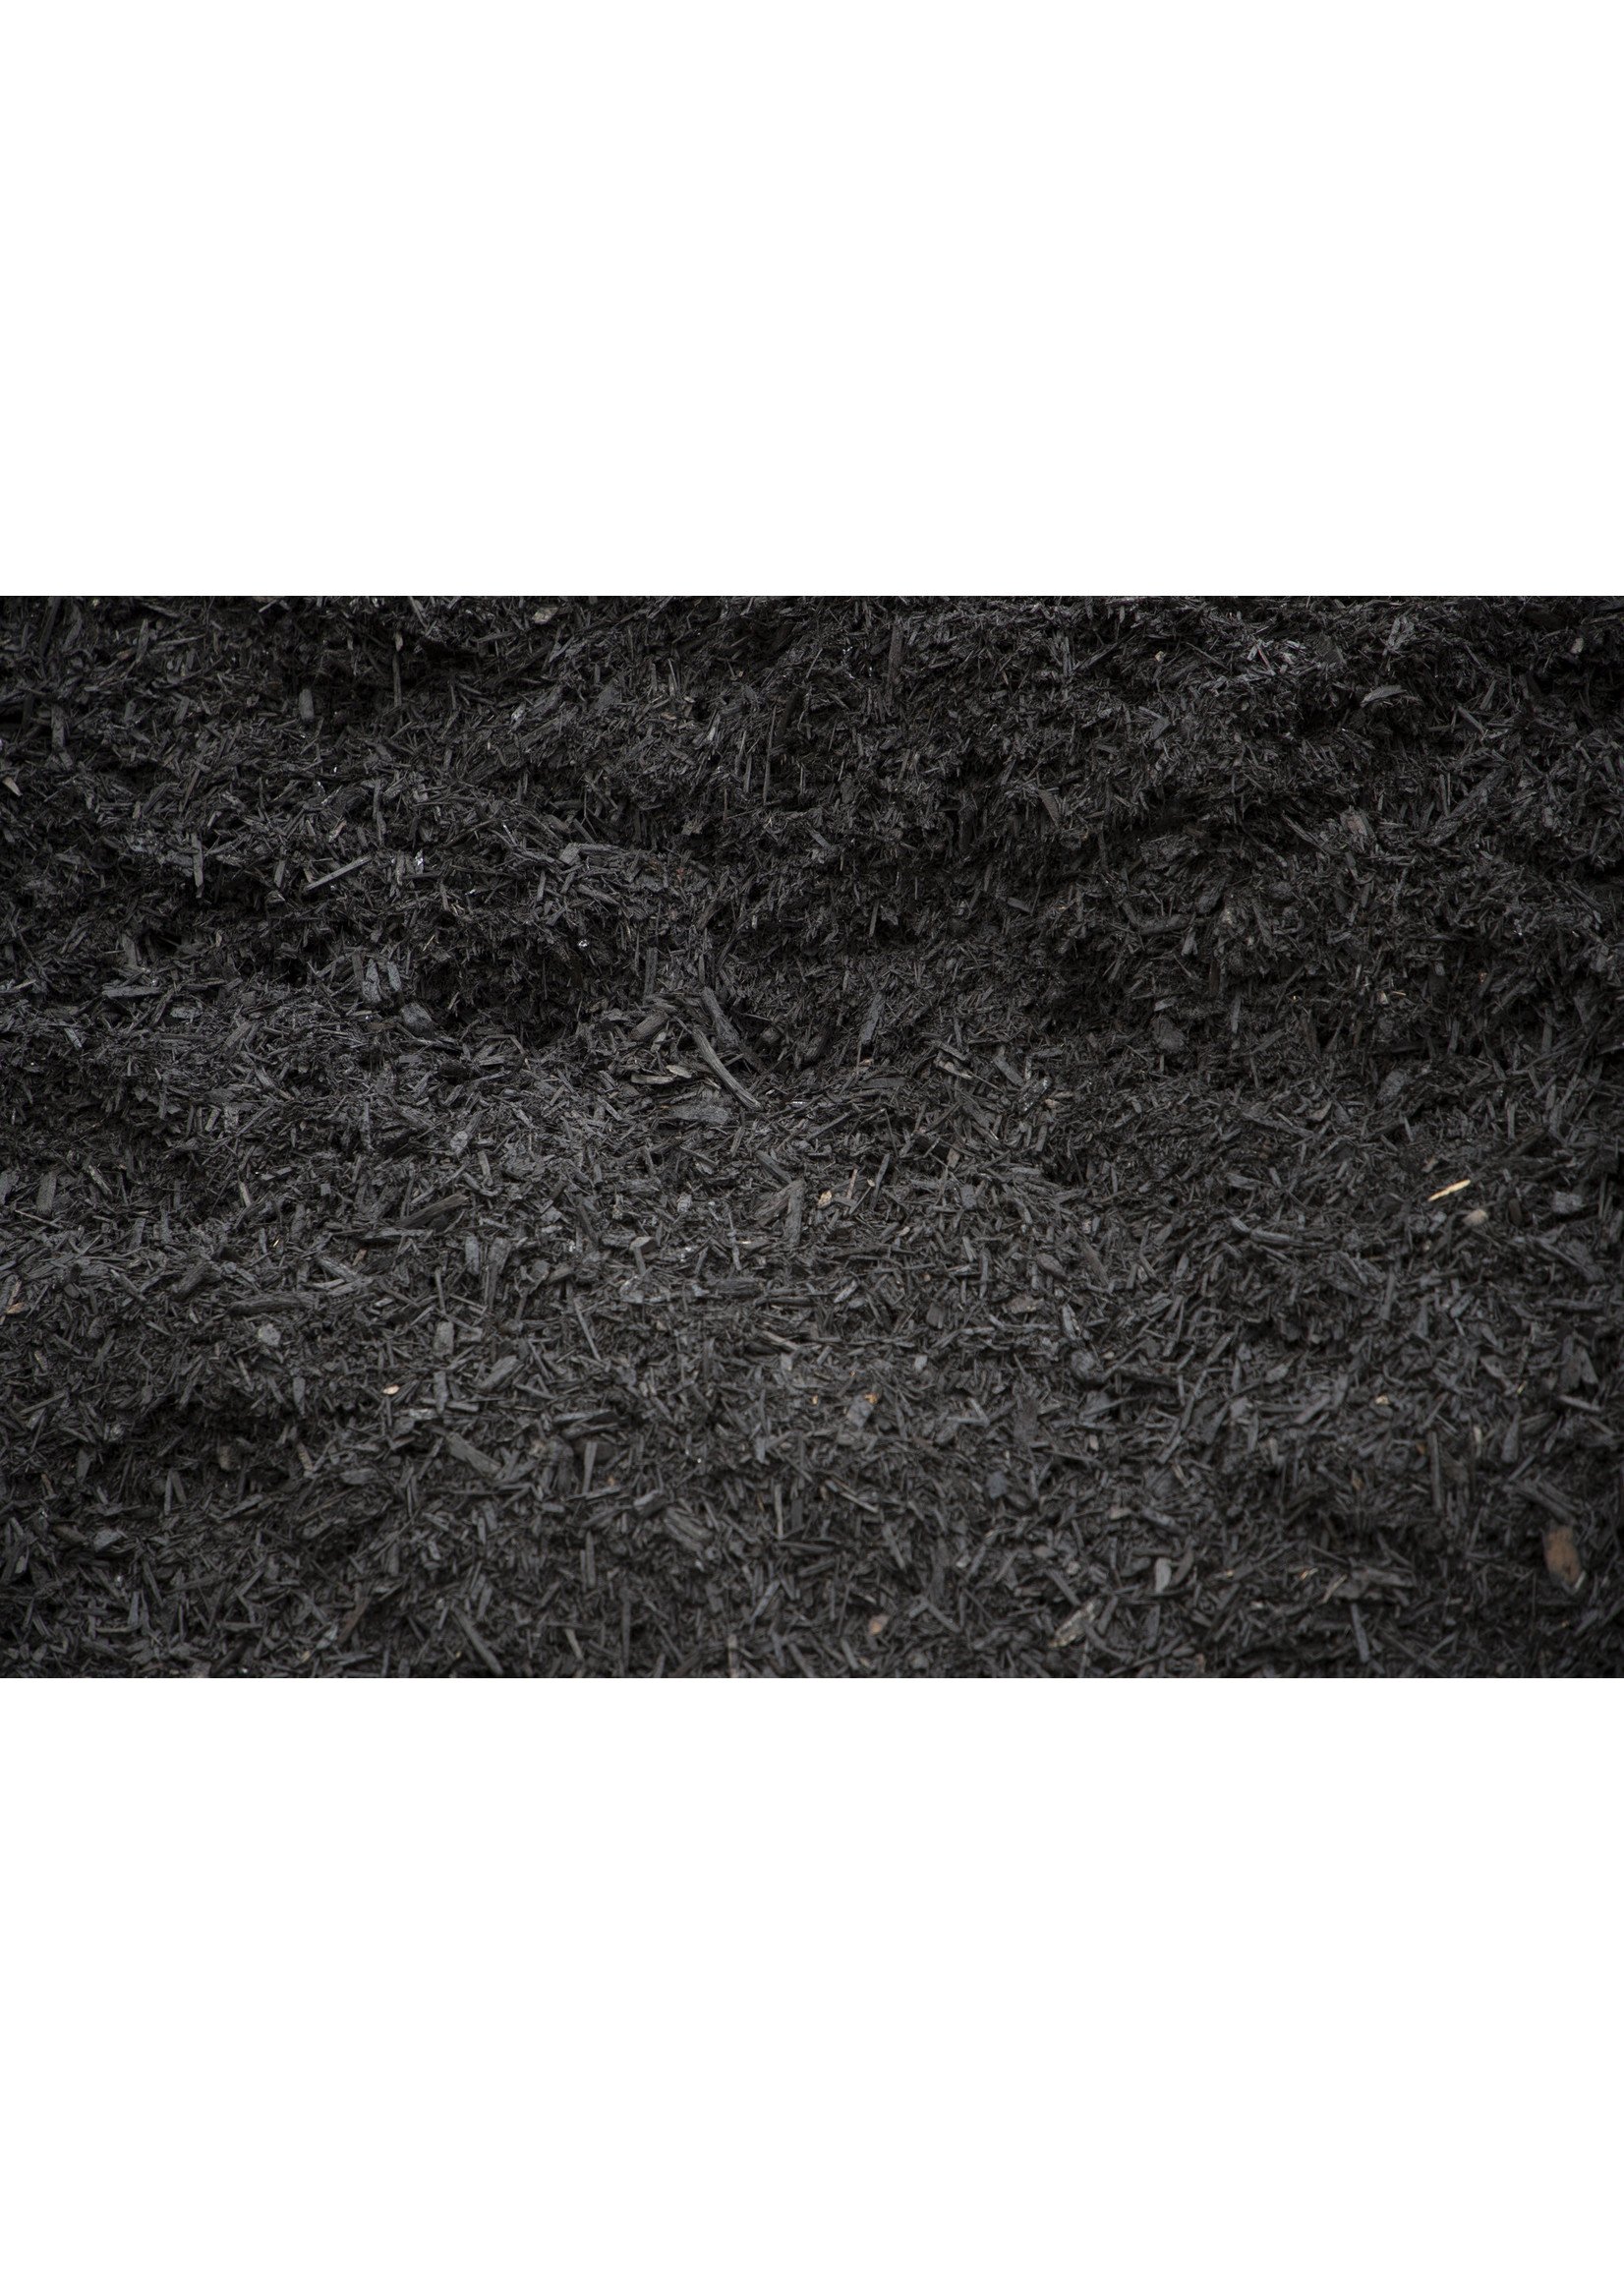 black triple shred mulch